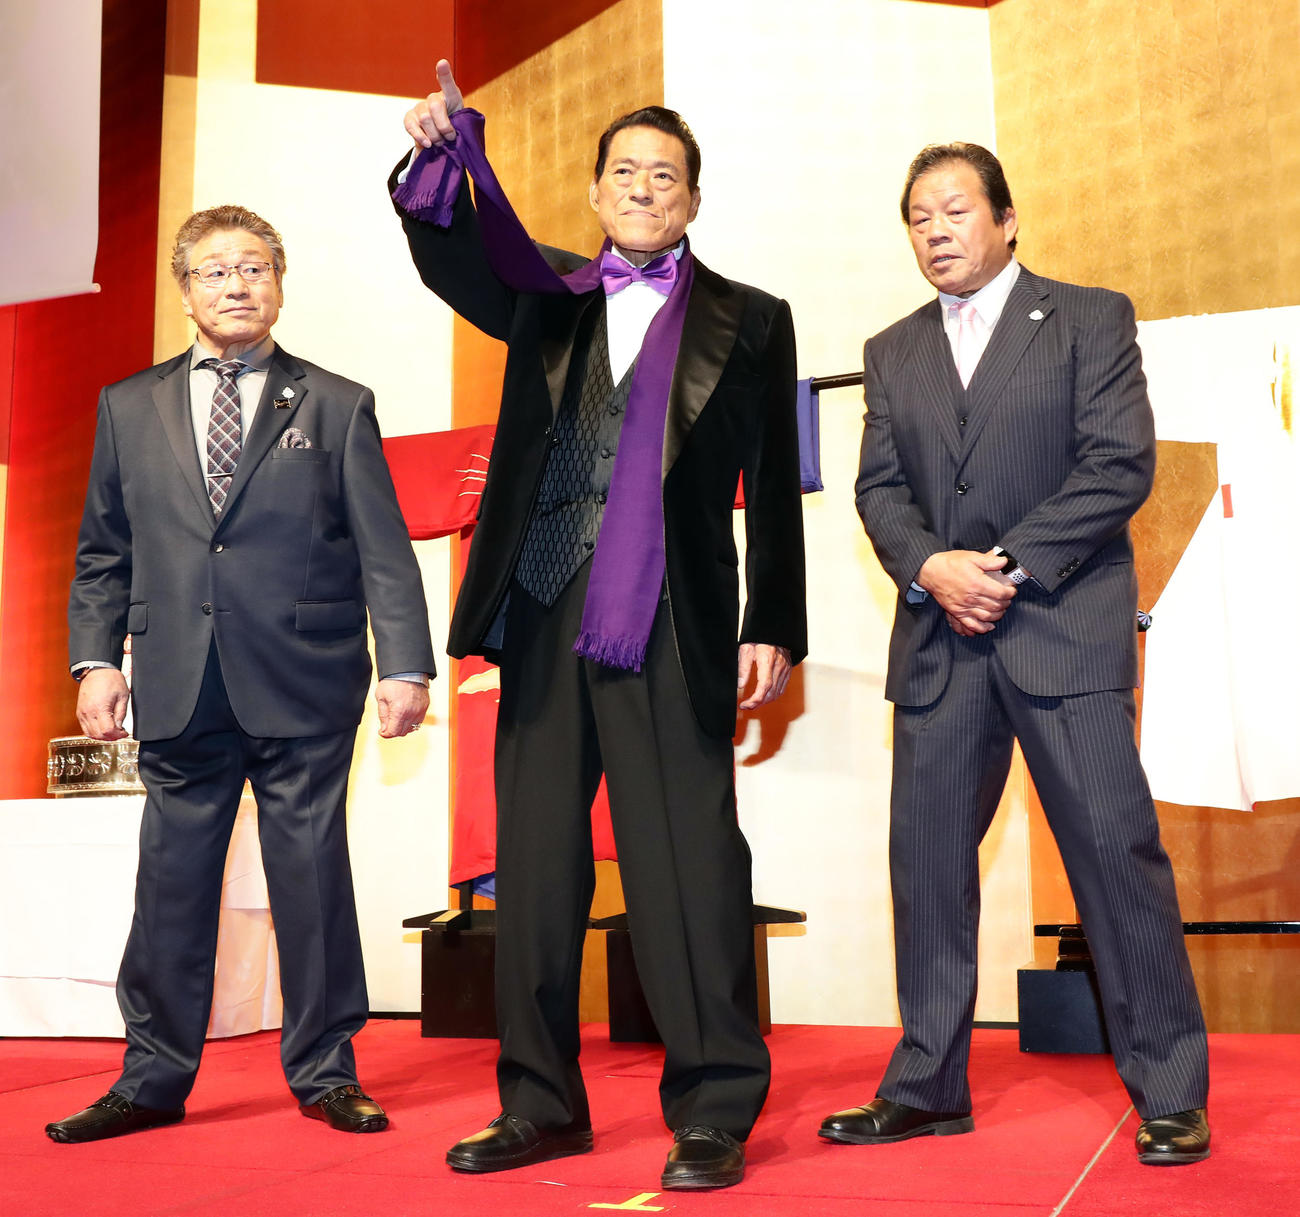 2020年2月20日、「アントニオ猪木の喜寿を祝う会」に出席した天龍源一郎（左）。中央はアントニオ猪木氏、右は藤波辰爾